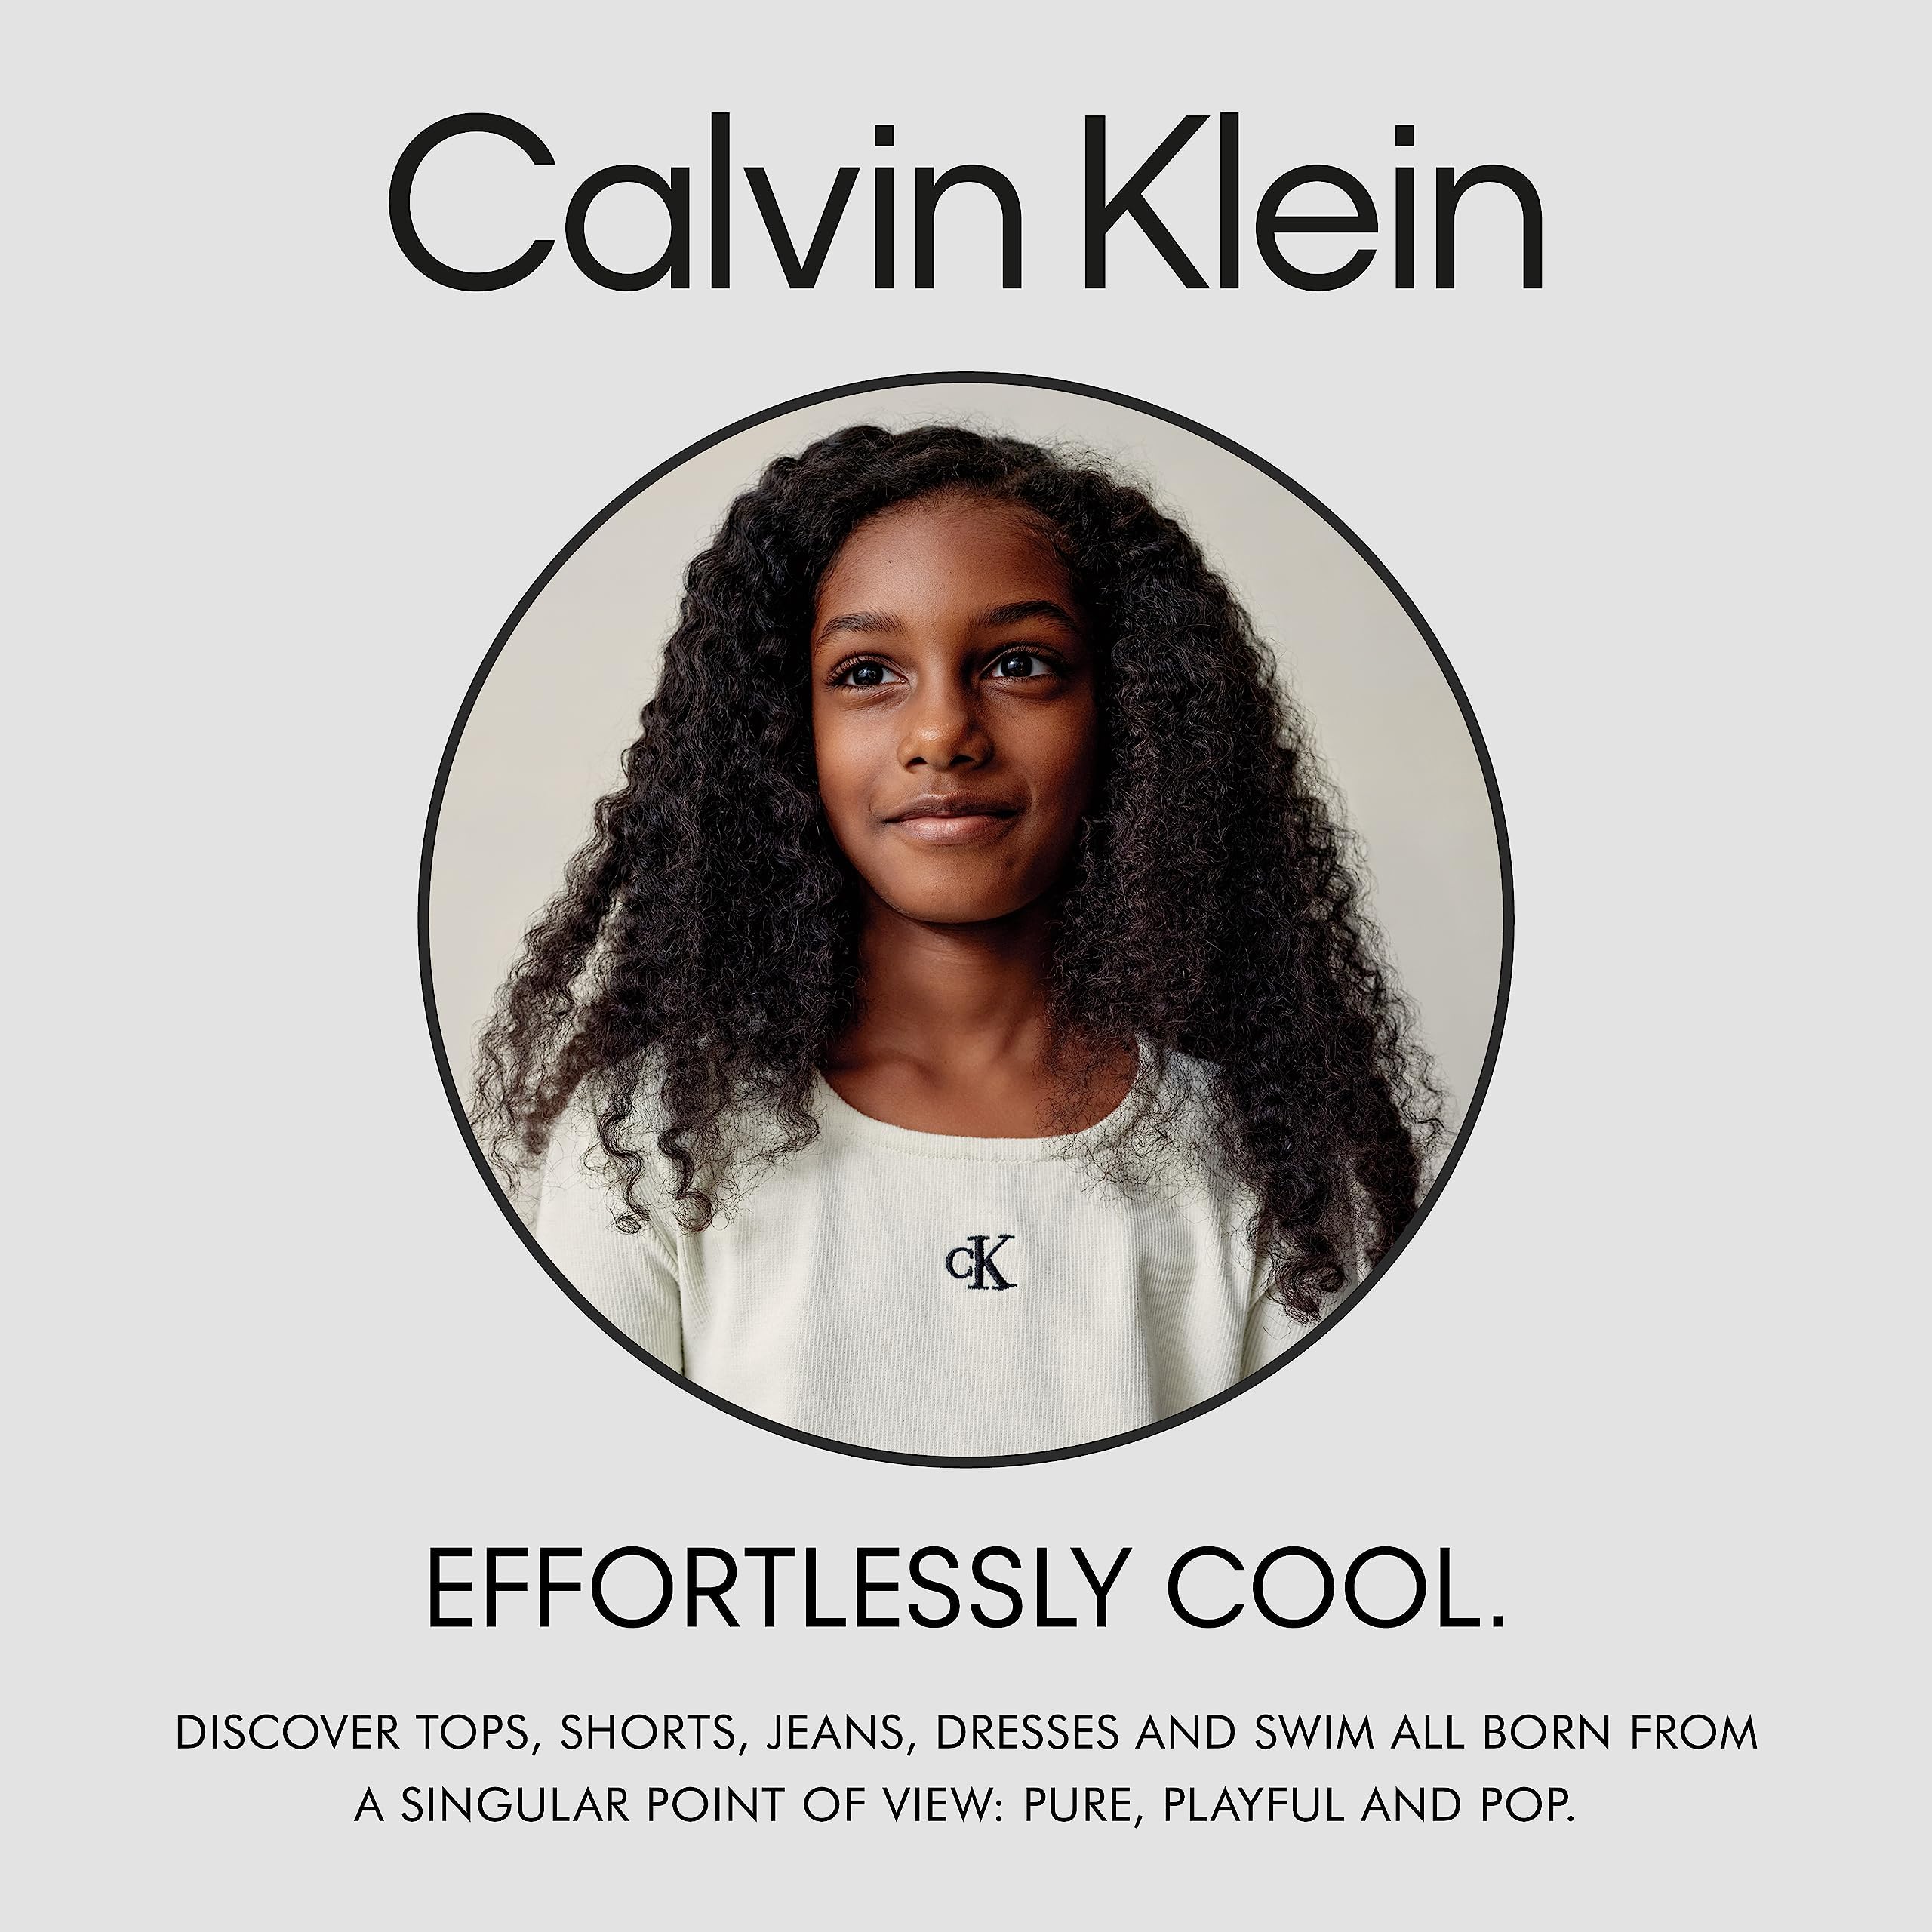 Calvin Klein Girls' Jean Shorts, Stretch Denim, Boyfriend Fit, Mid to High Rise